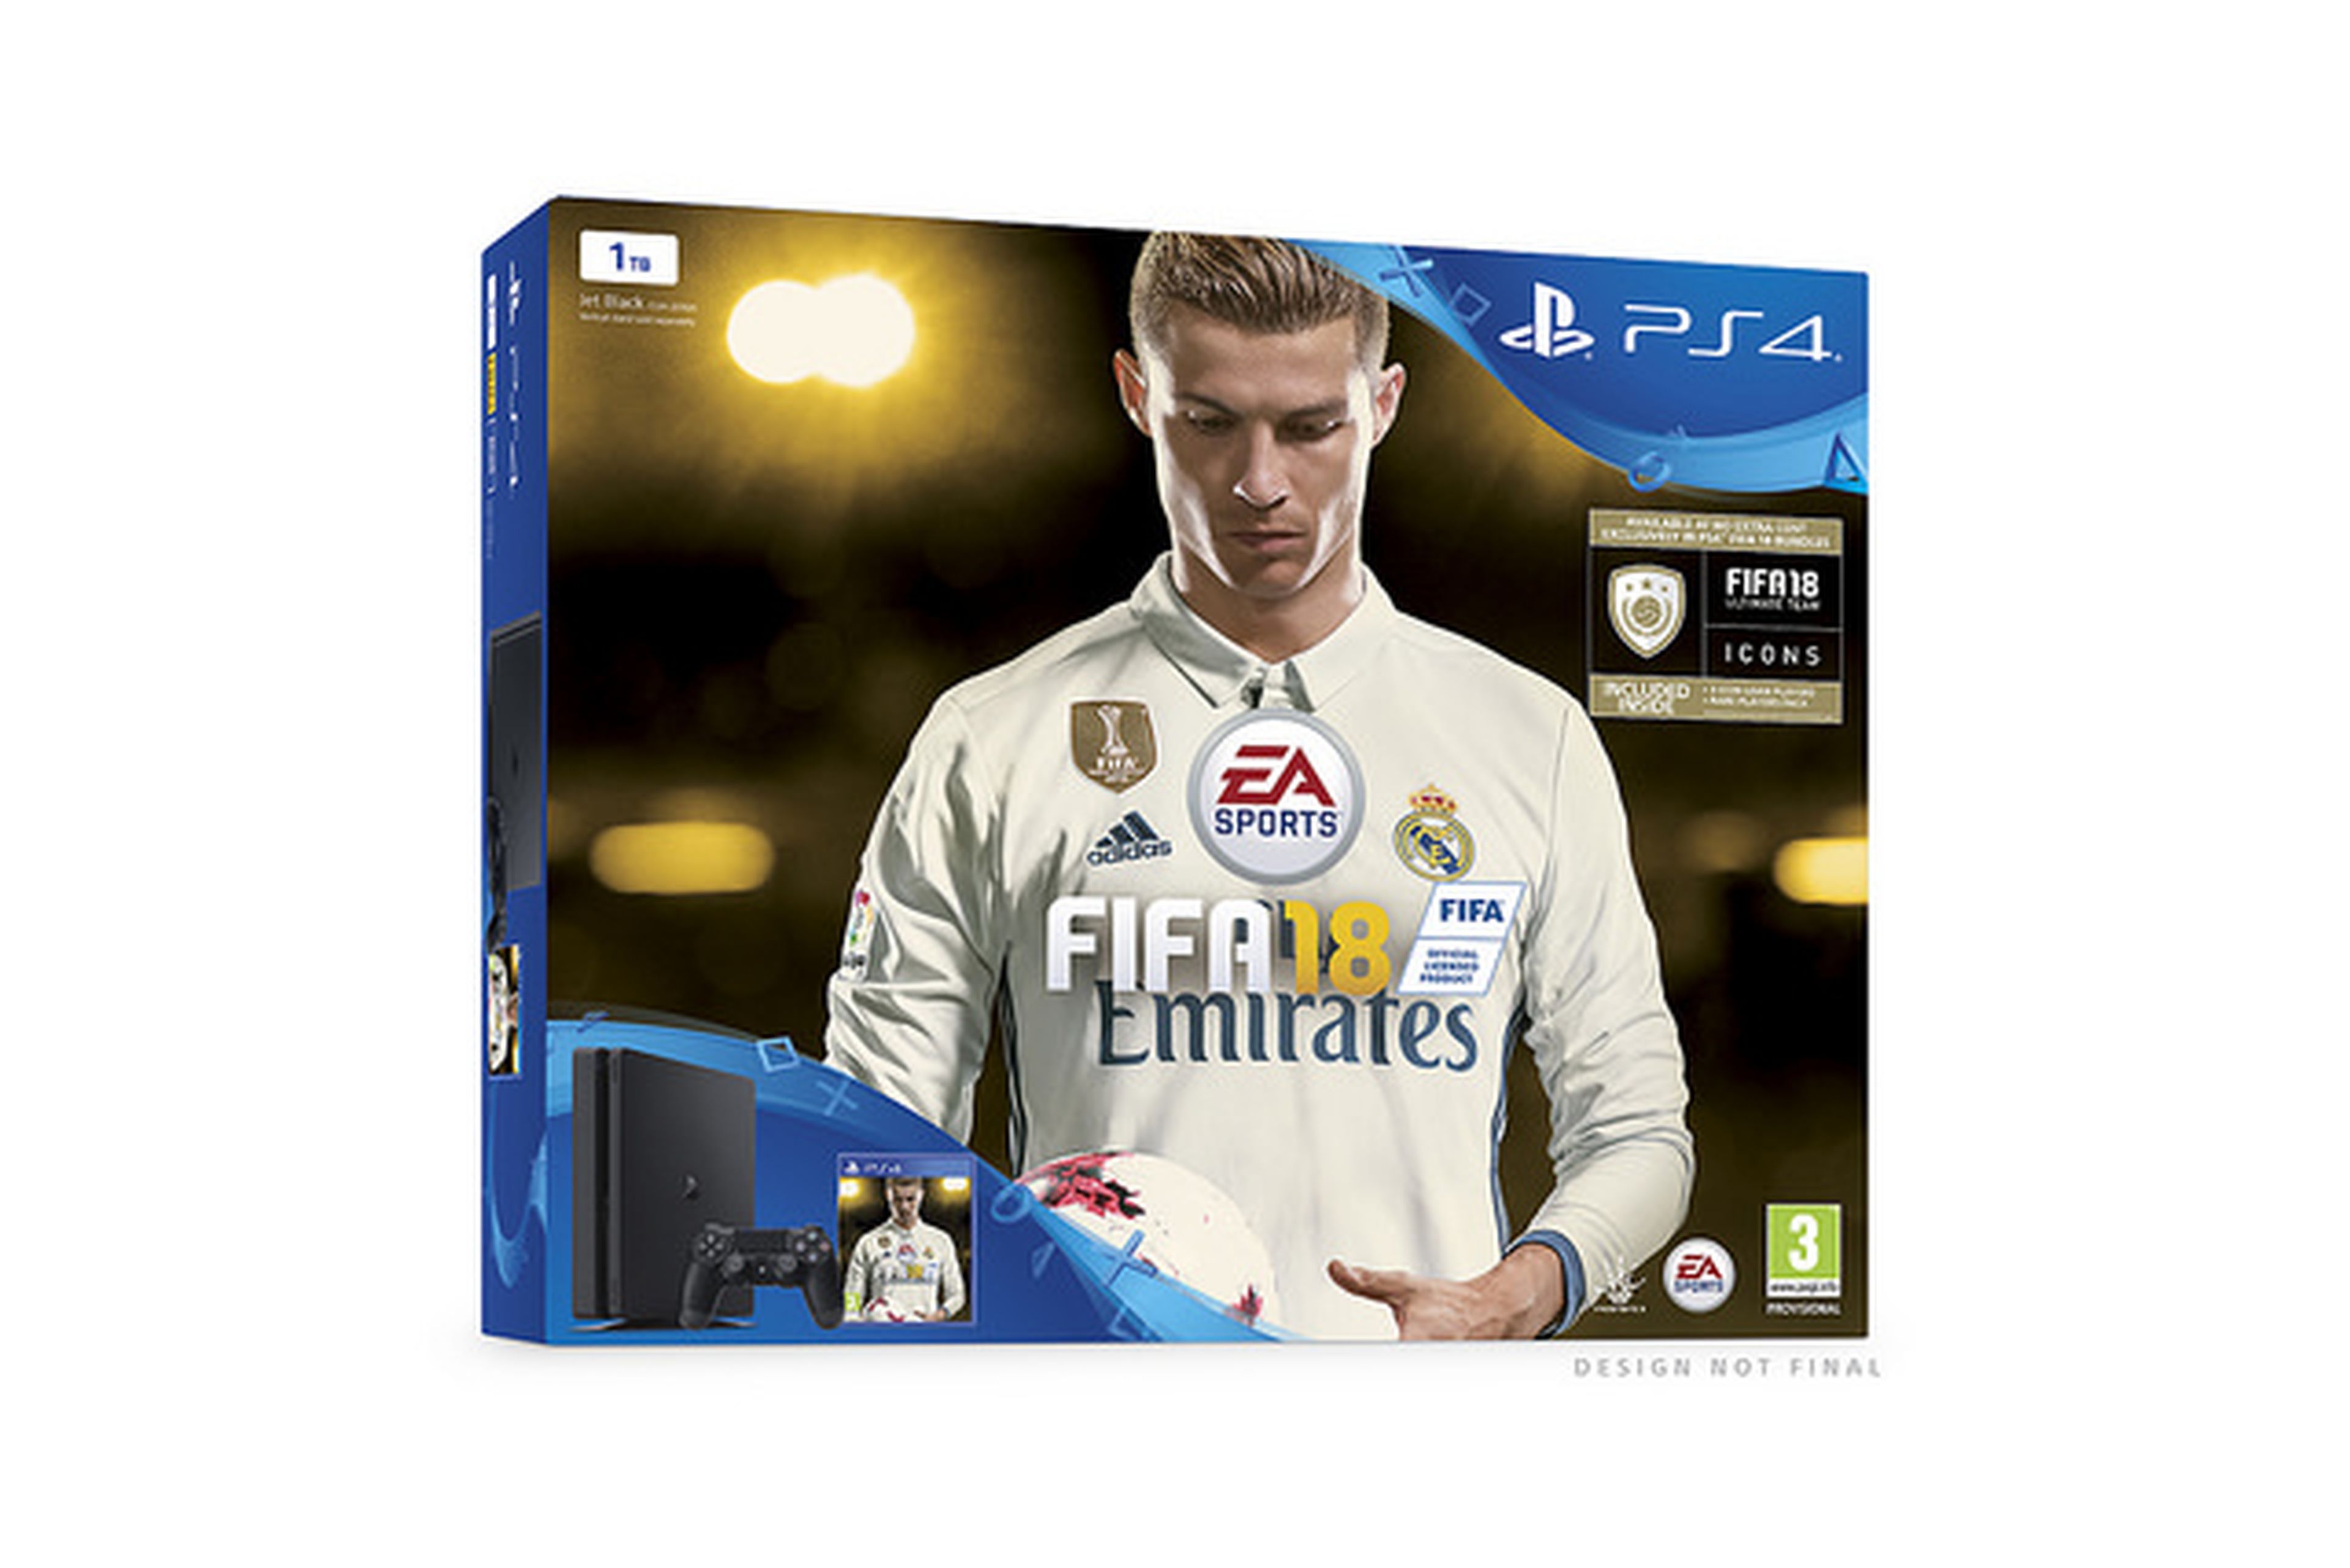 PS4 y FIFA 18